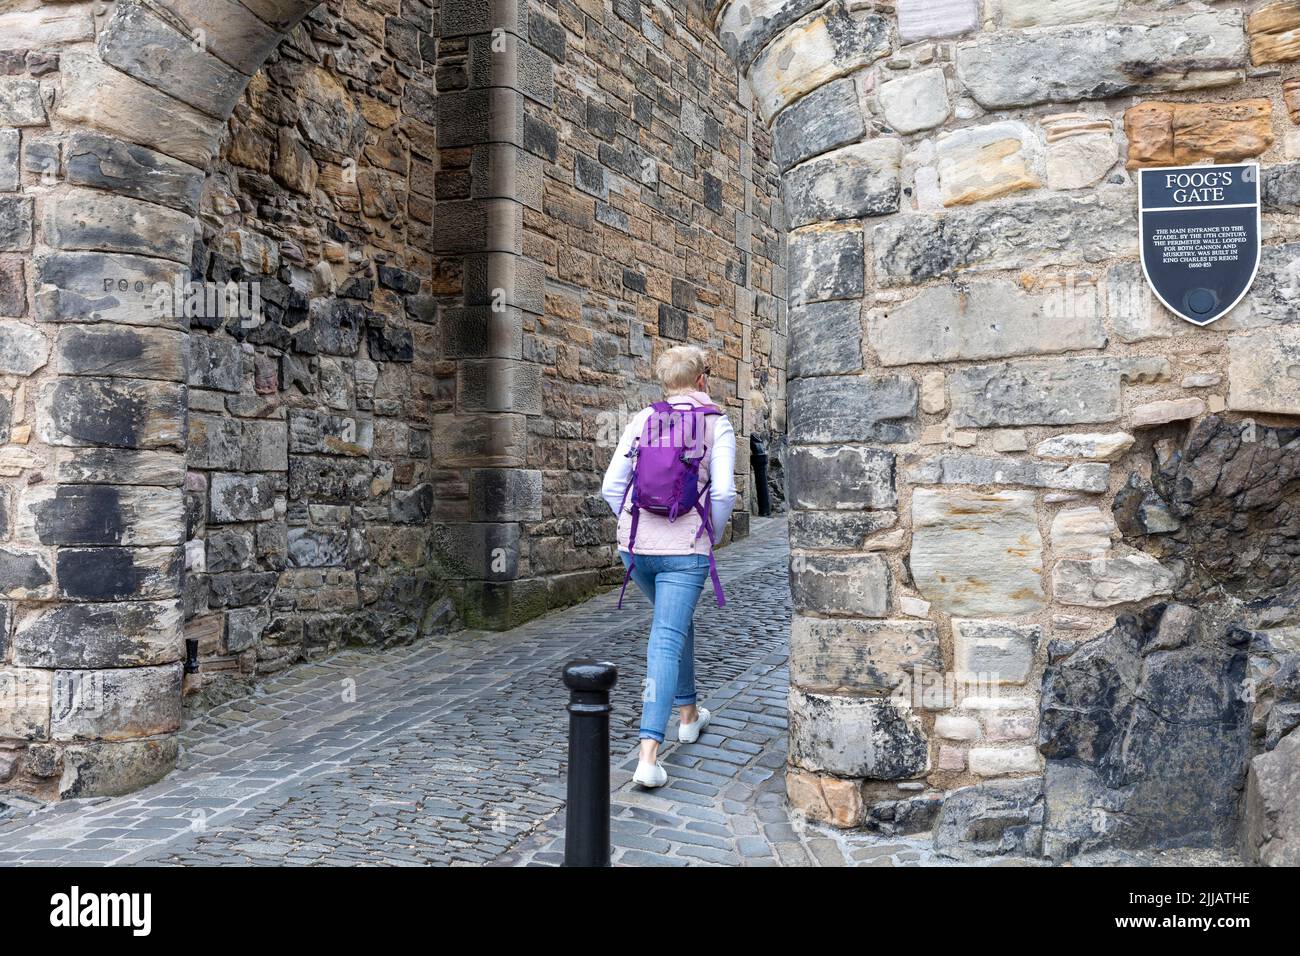 Edinburgh Castle Scotland, une dame blonde libérée par le mannequin passe devant la porte de Foog au château qui était l'entrée principale originale, juillet 2022, Écosse, Royaume-Uni Banque D'Images